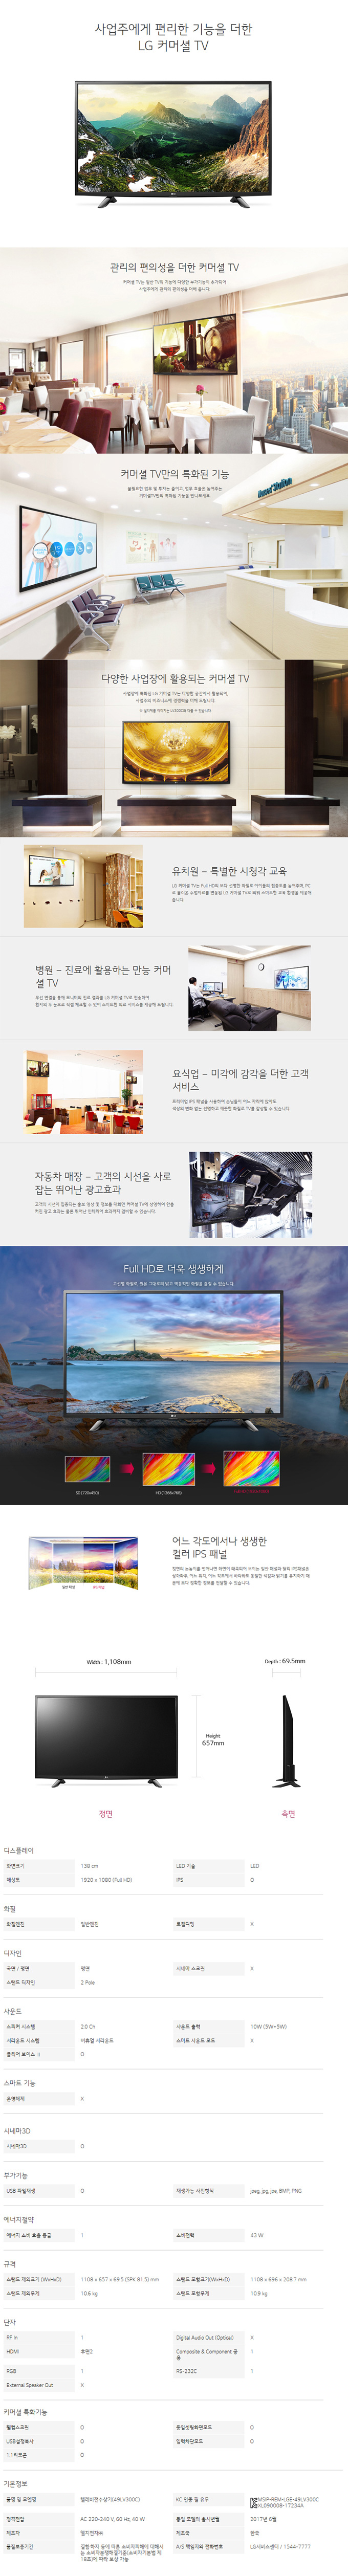 동서울케이블 - LG 49인치 LED TV (49LV300C) 상세보기